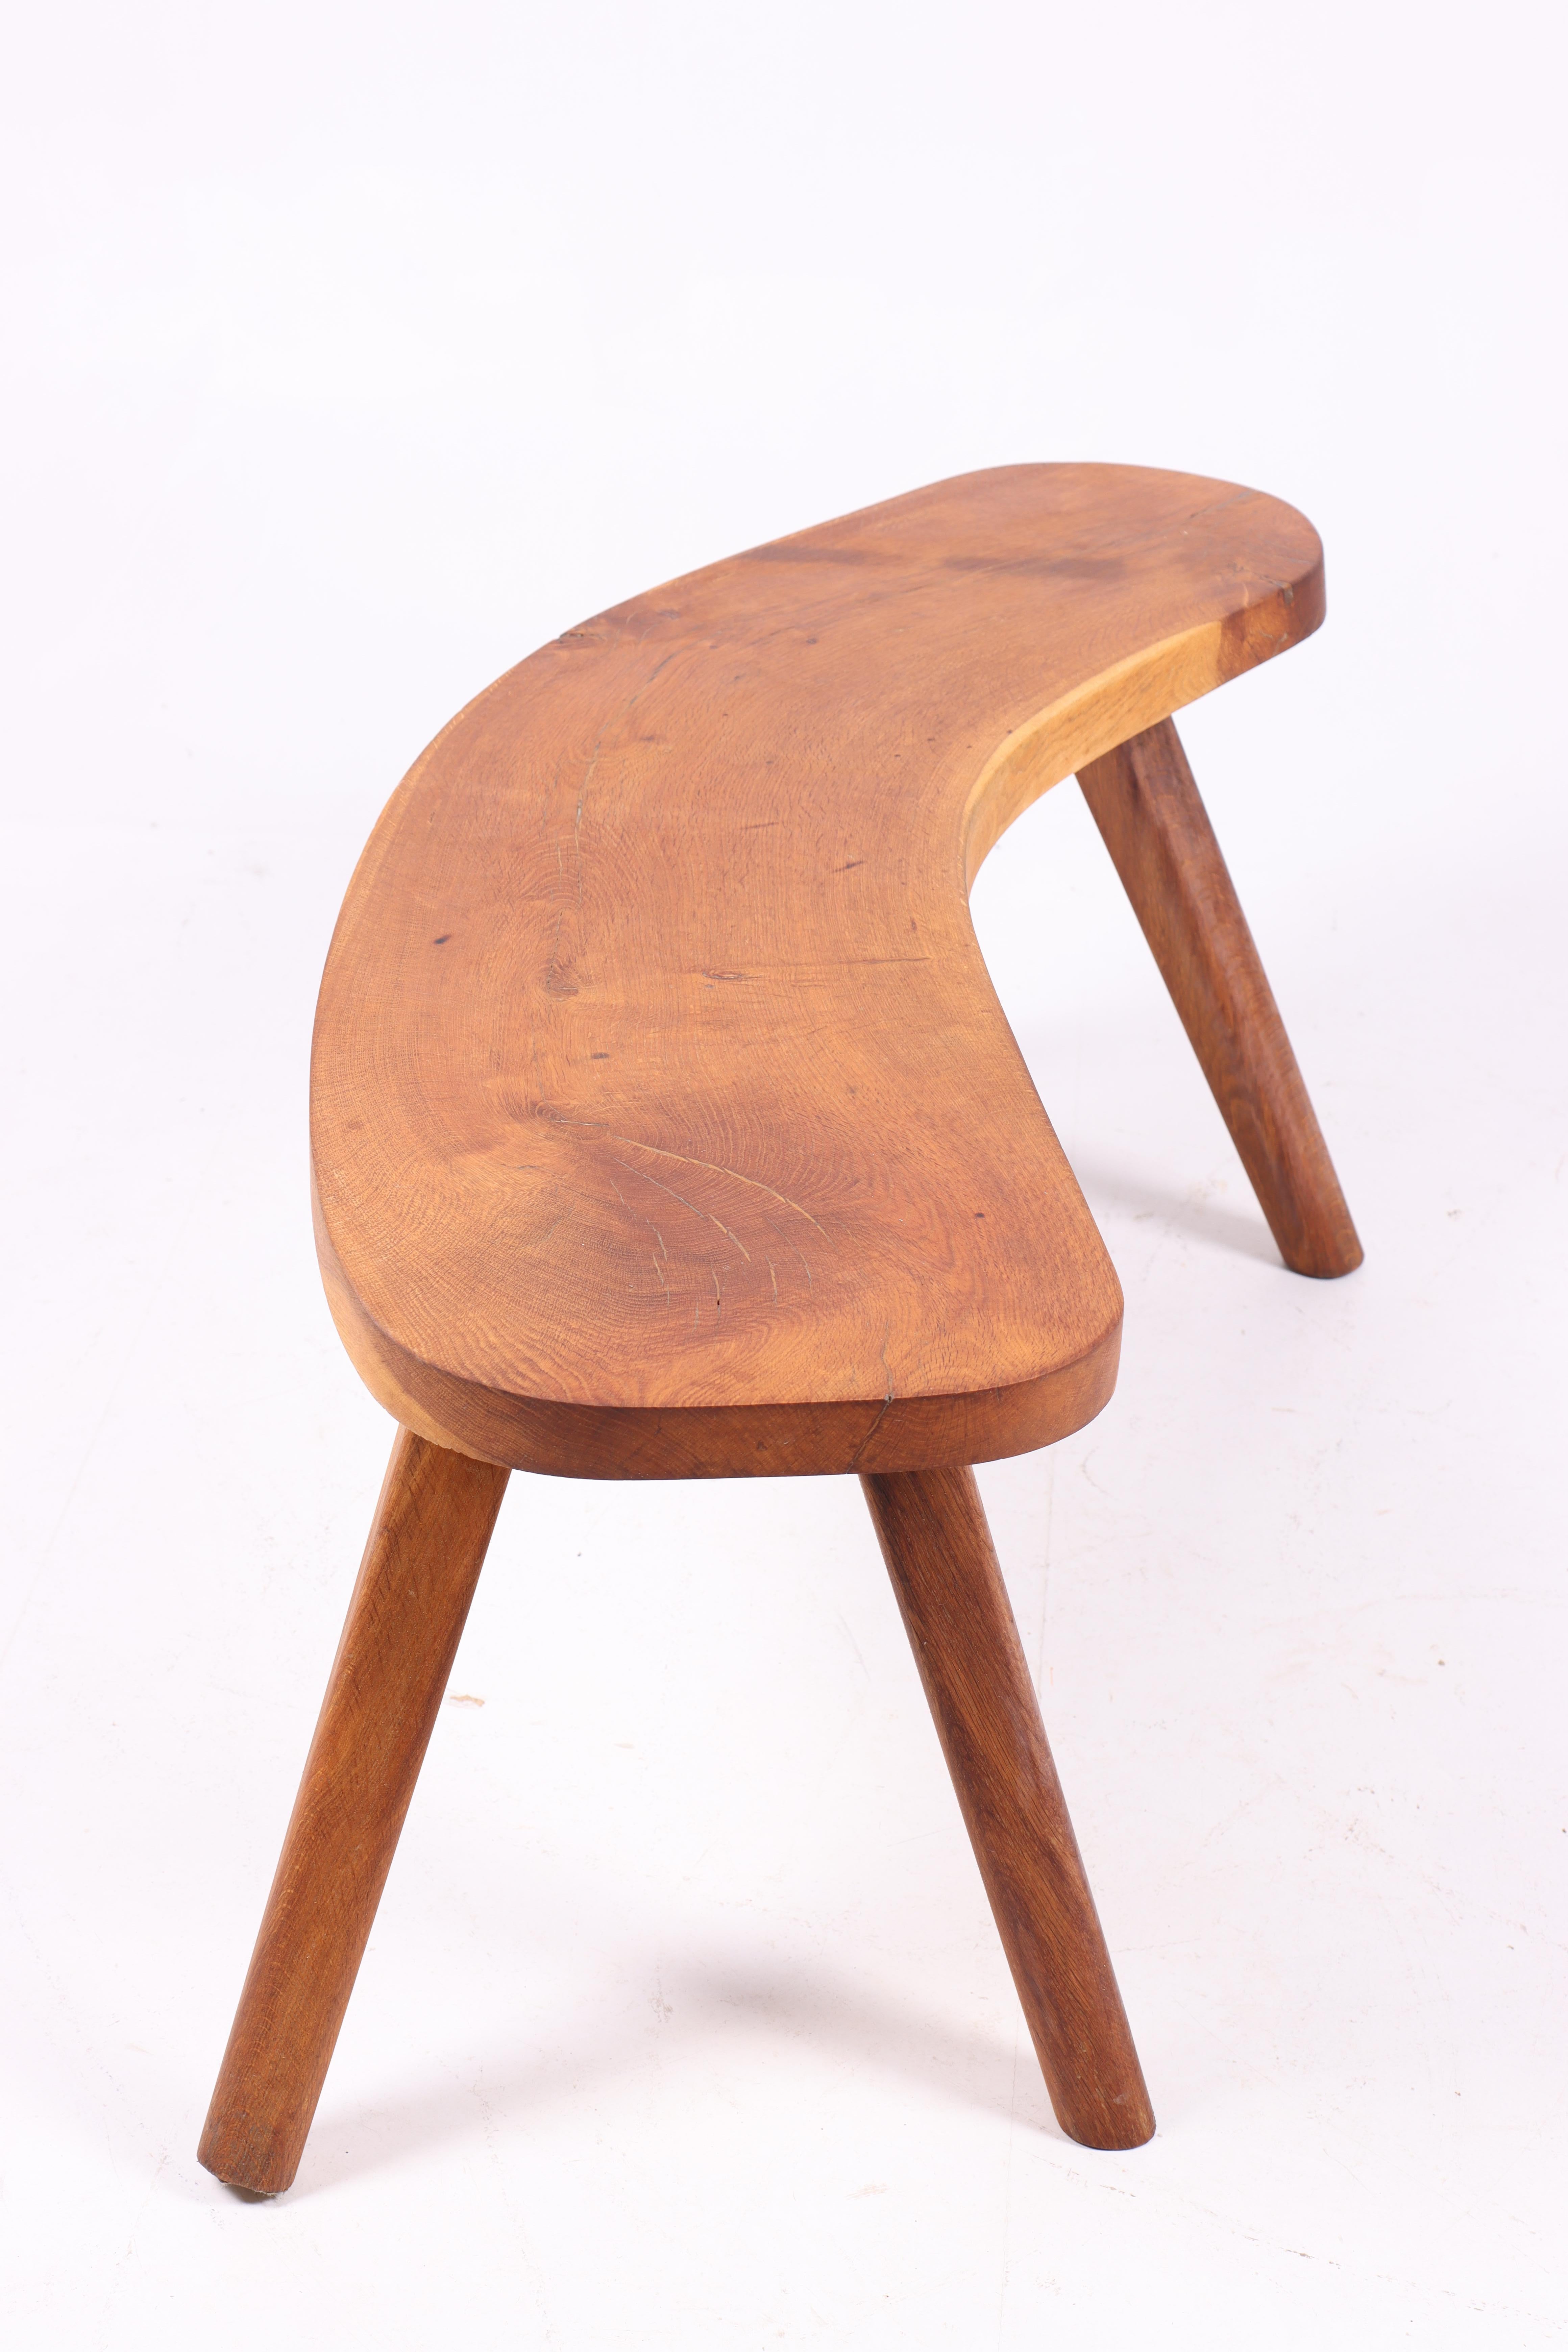 Scandinavian Modern Low Table in Solid Oak, Made in Denmark, 1940s For Sale